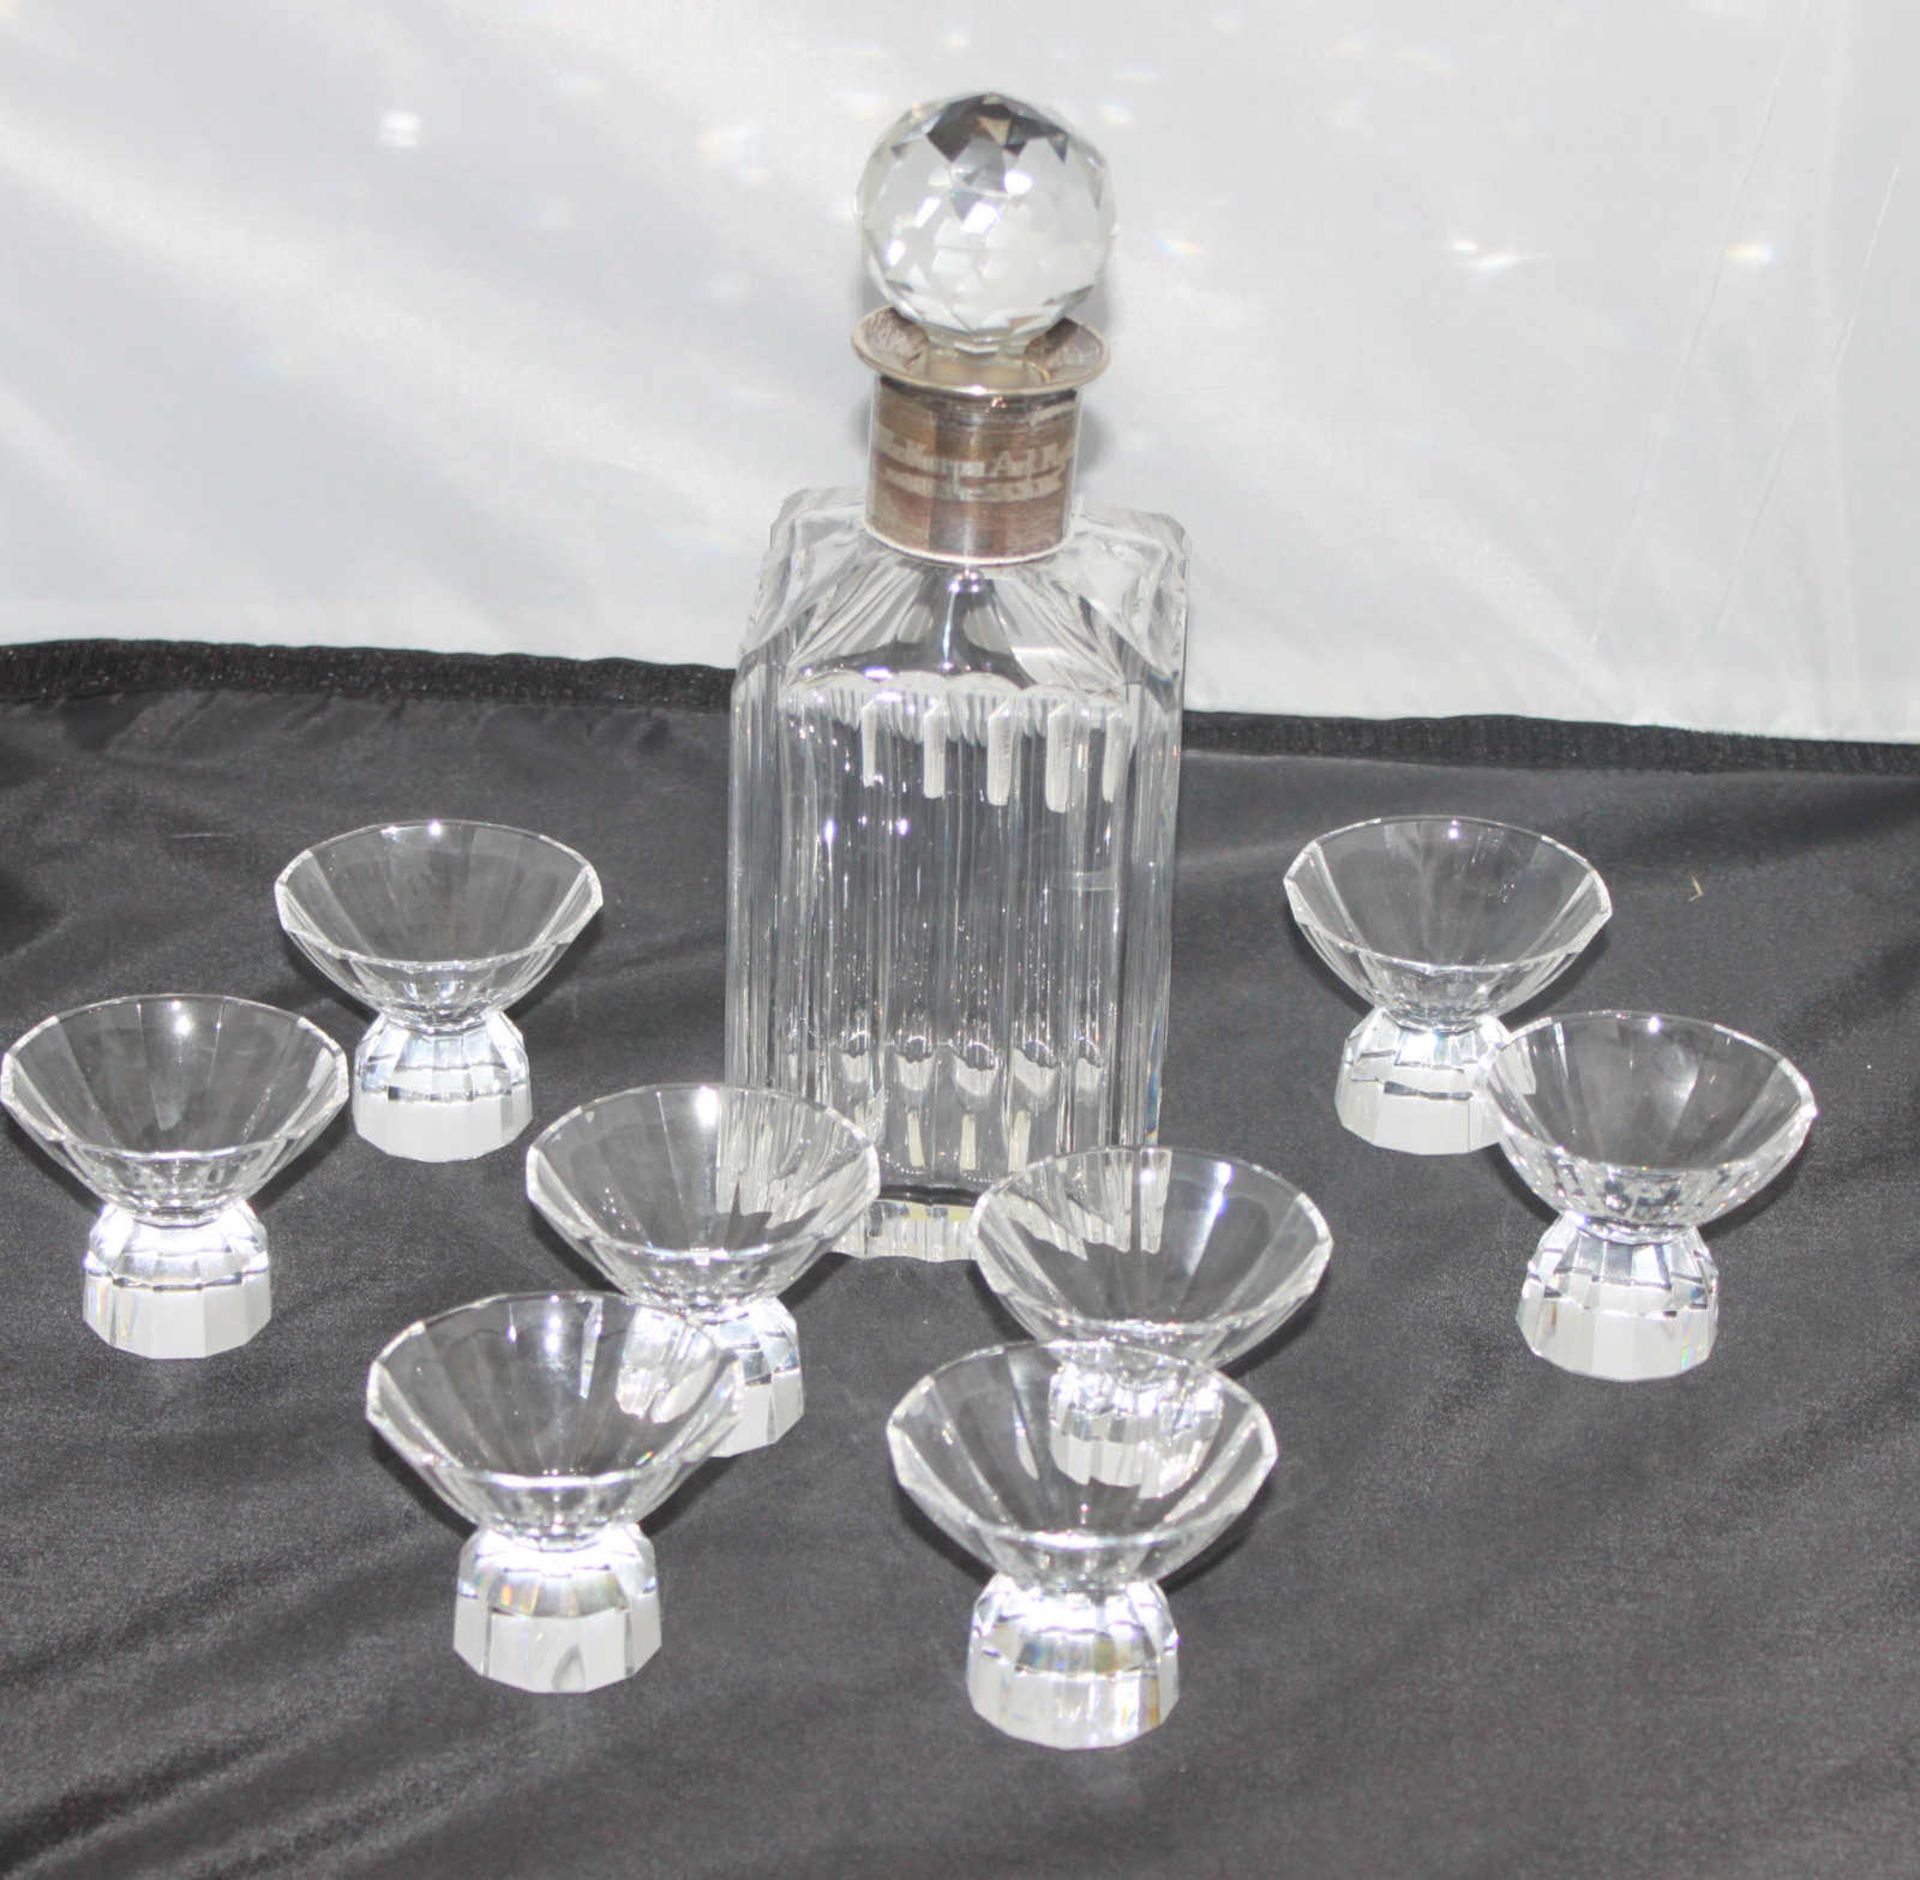 Bleikristall Stöpselflasche, mit Silberbeschlag, mit Militariagravur und 8 Gläsern Lead crystal